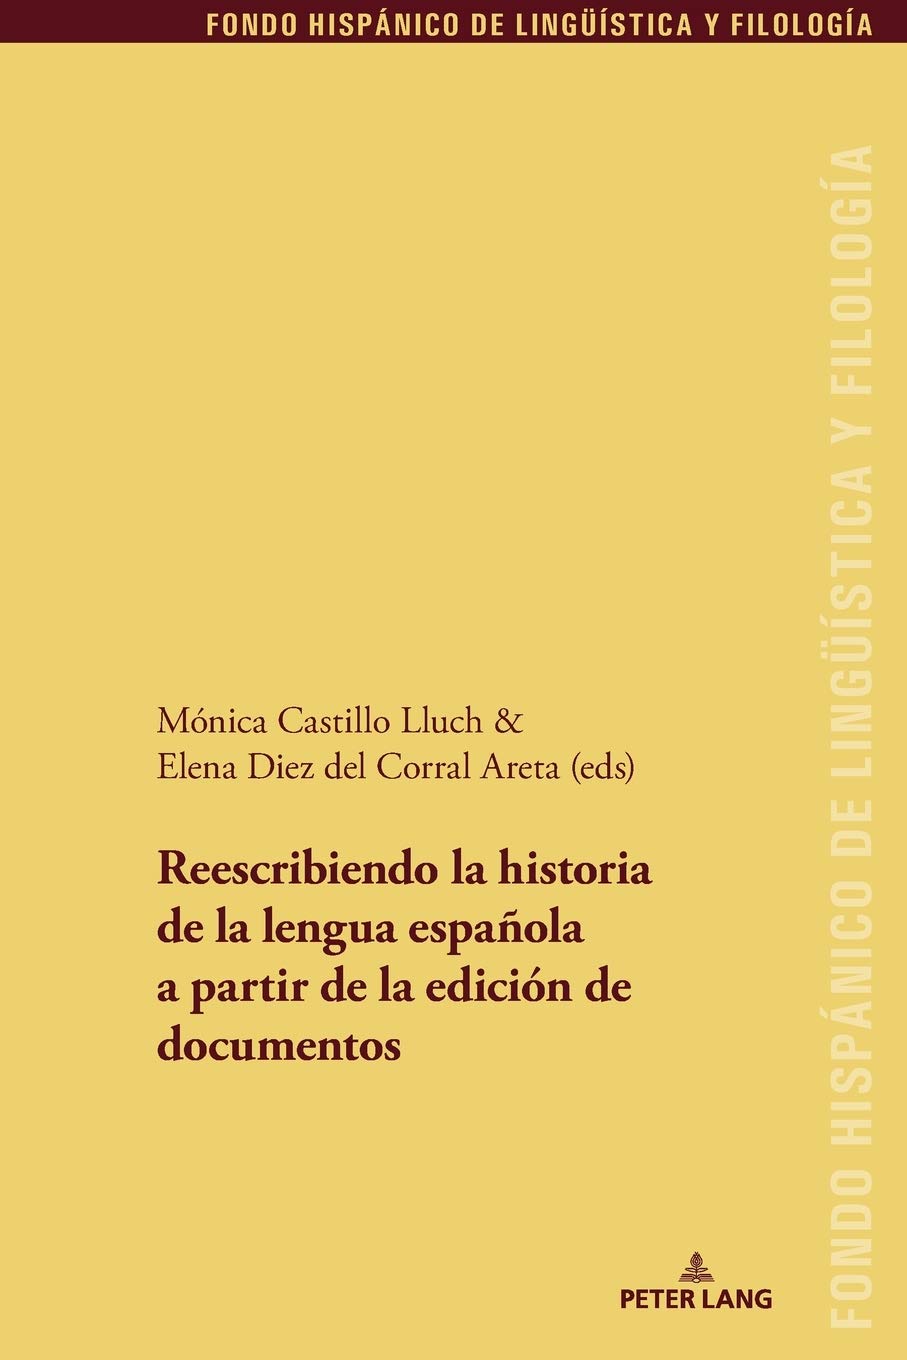 Imagen de portada del libro Reescribiendo la historia de la lengua española a partir de la edición de documentos